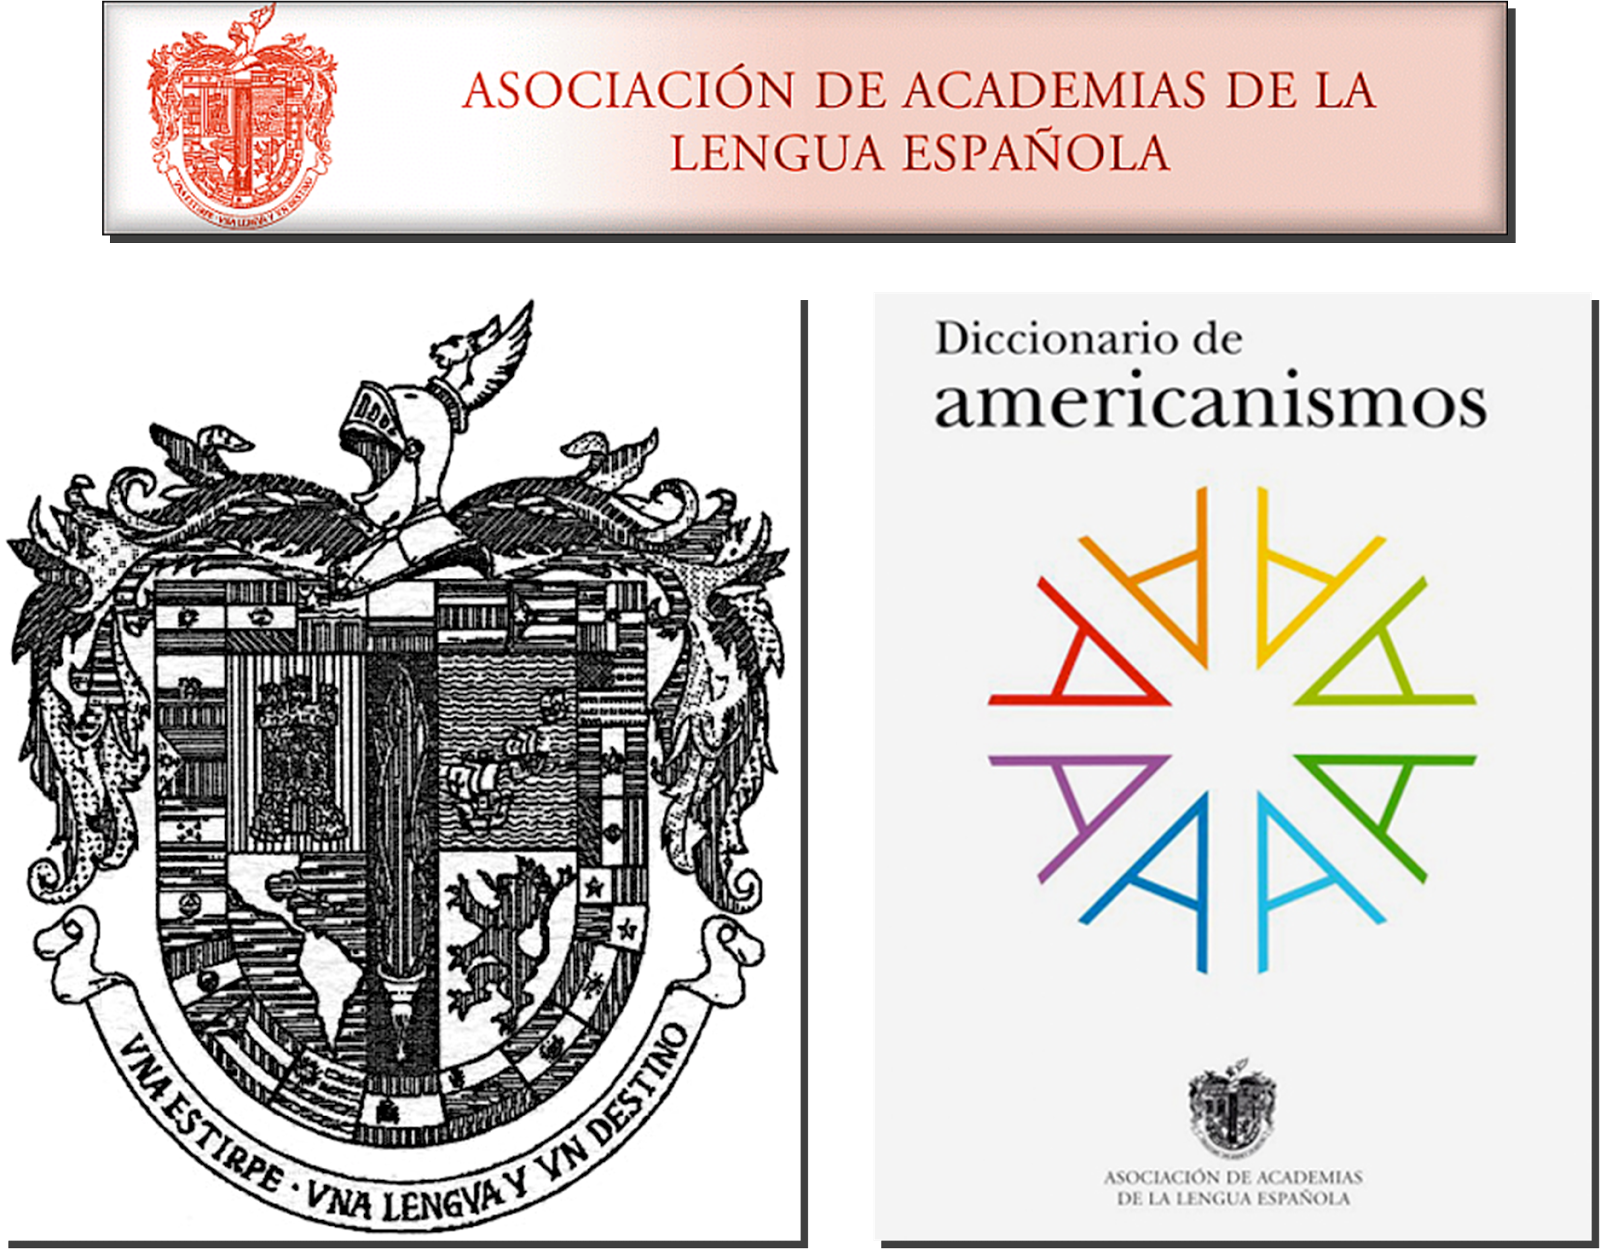 Luis Arambilet Ingresó A La Academia Dominicana De La Lengua Como Miembro Correspondiente Con Su